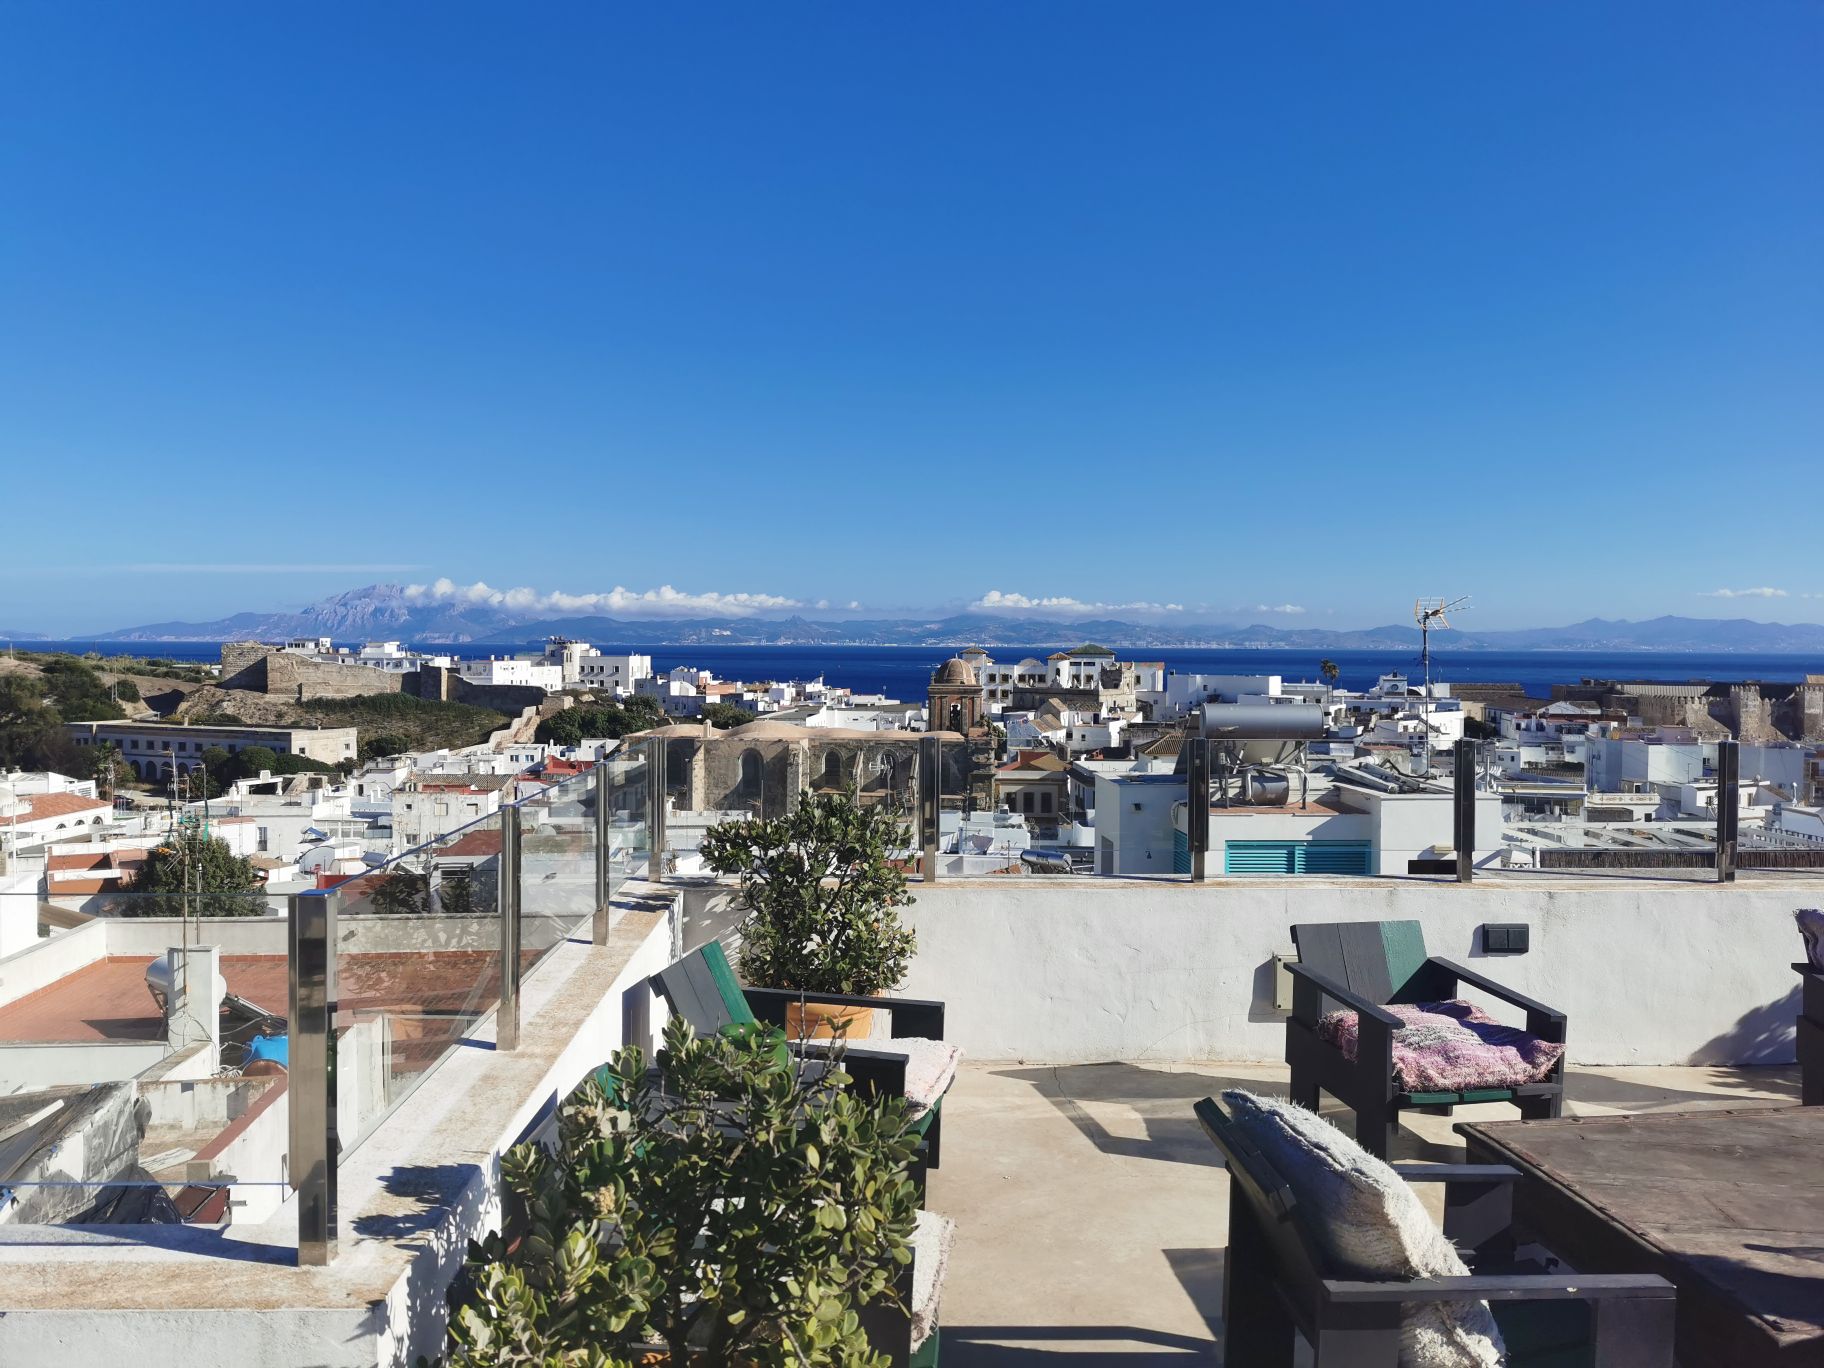 很惊艳的房子，从摩洛哥坐船过来，下了船就去报了个船看鲸鱼，从码头可以步行到酒店，楼顶的大平台风景很好